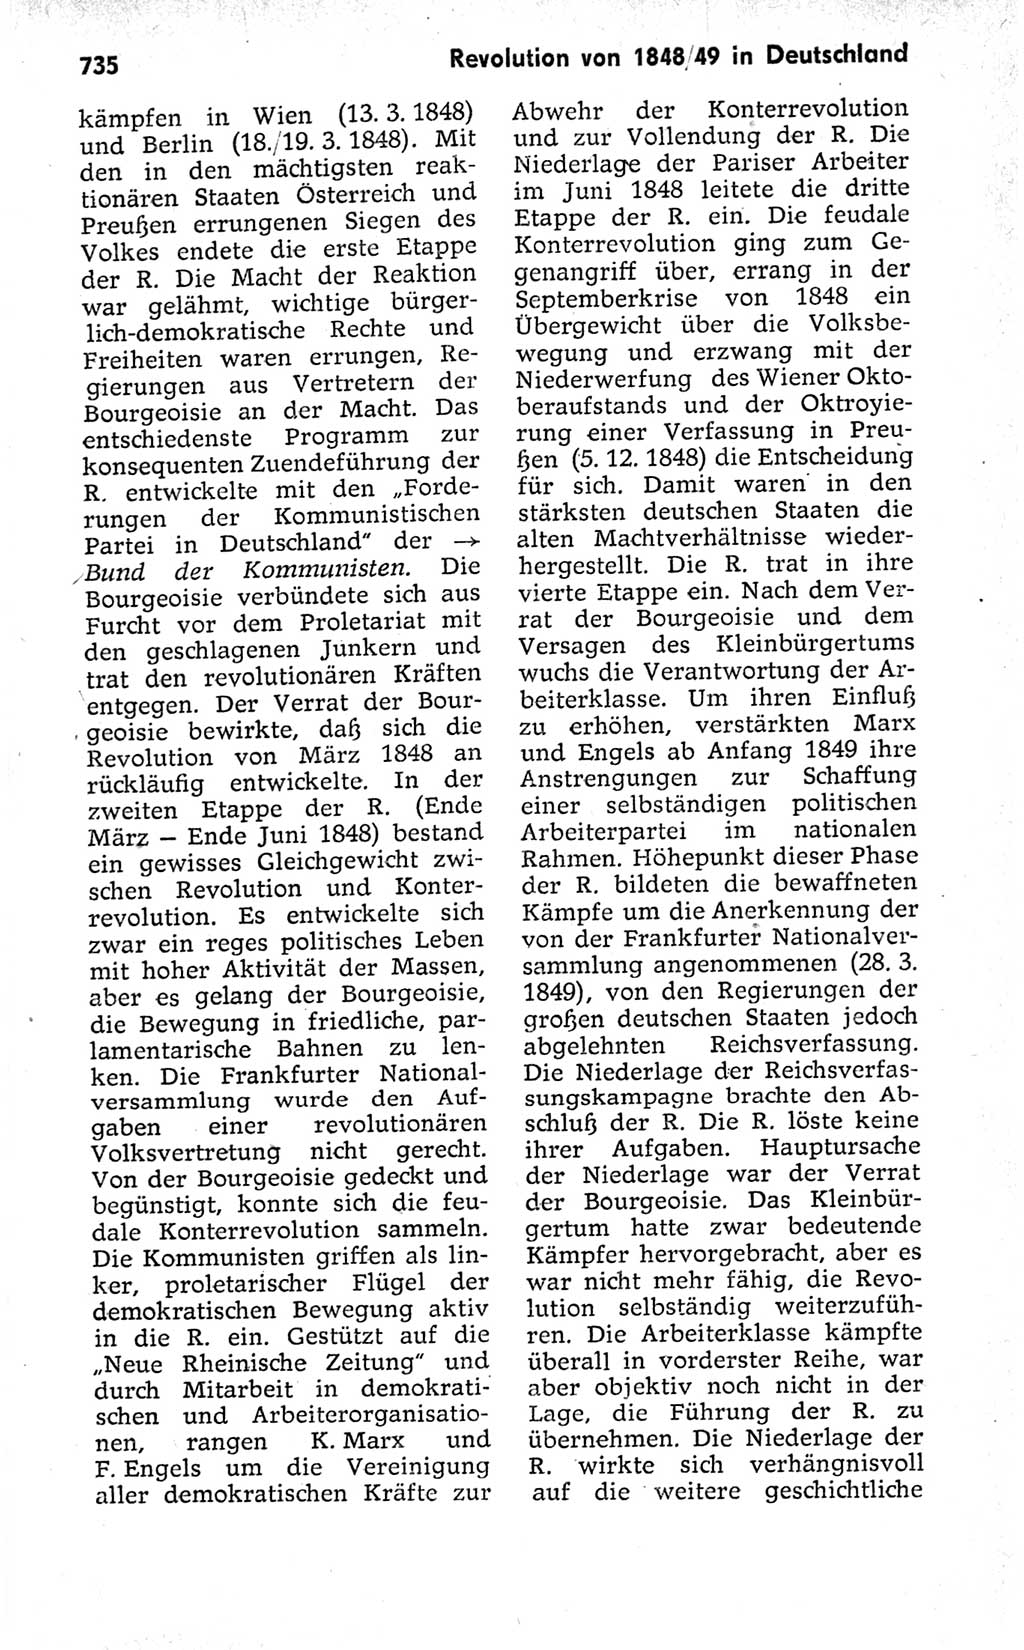 Kleines politisches Wörterbuch [Deutsche Demokratische Republik (DDR)] 1973, Seite 735 (Kl. pol. Wb. DDR 1973, S. 735)